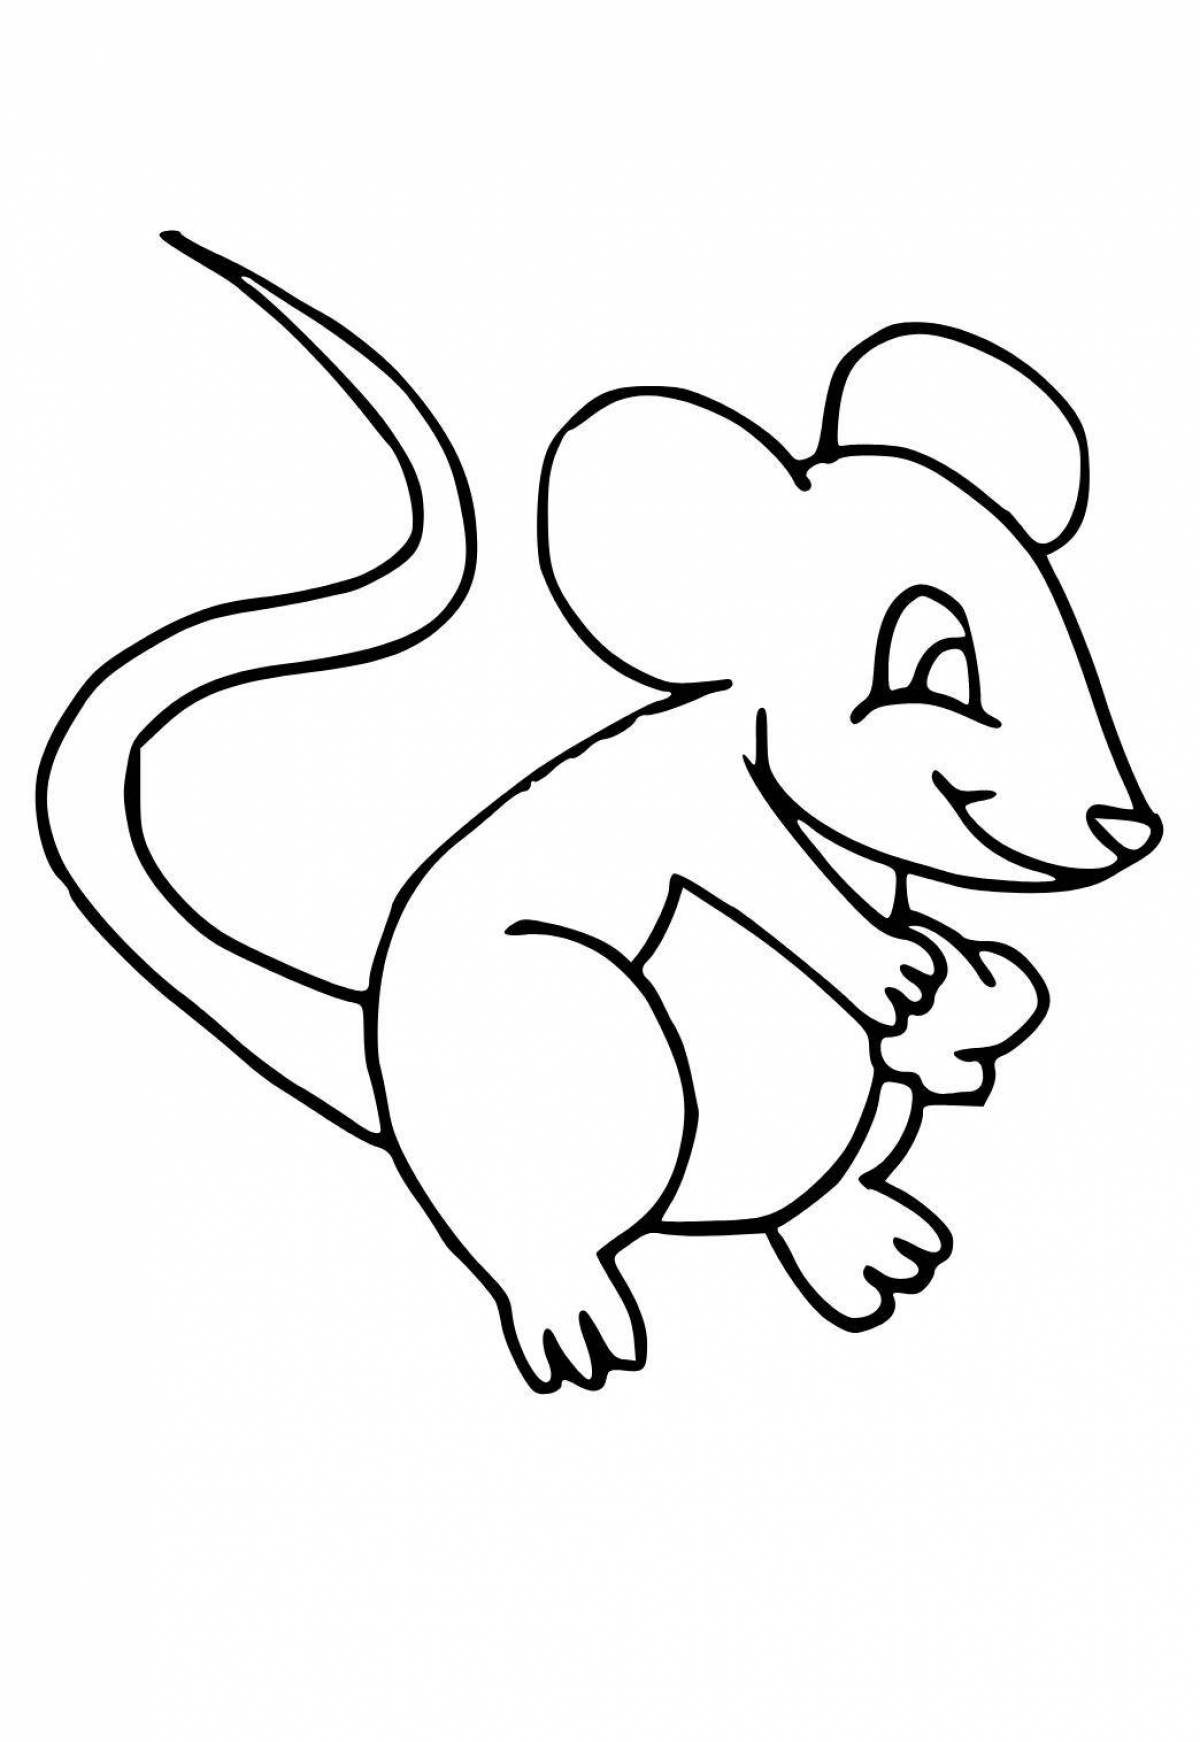 Раскраска мышь распечатать. Раскраска мышка. Мышь раскраска для детей. Раскраска мышонок. Мышка раскраска для детей.